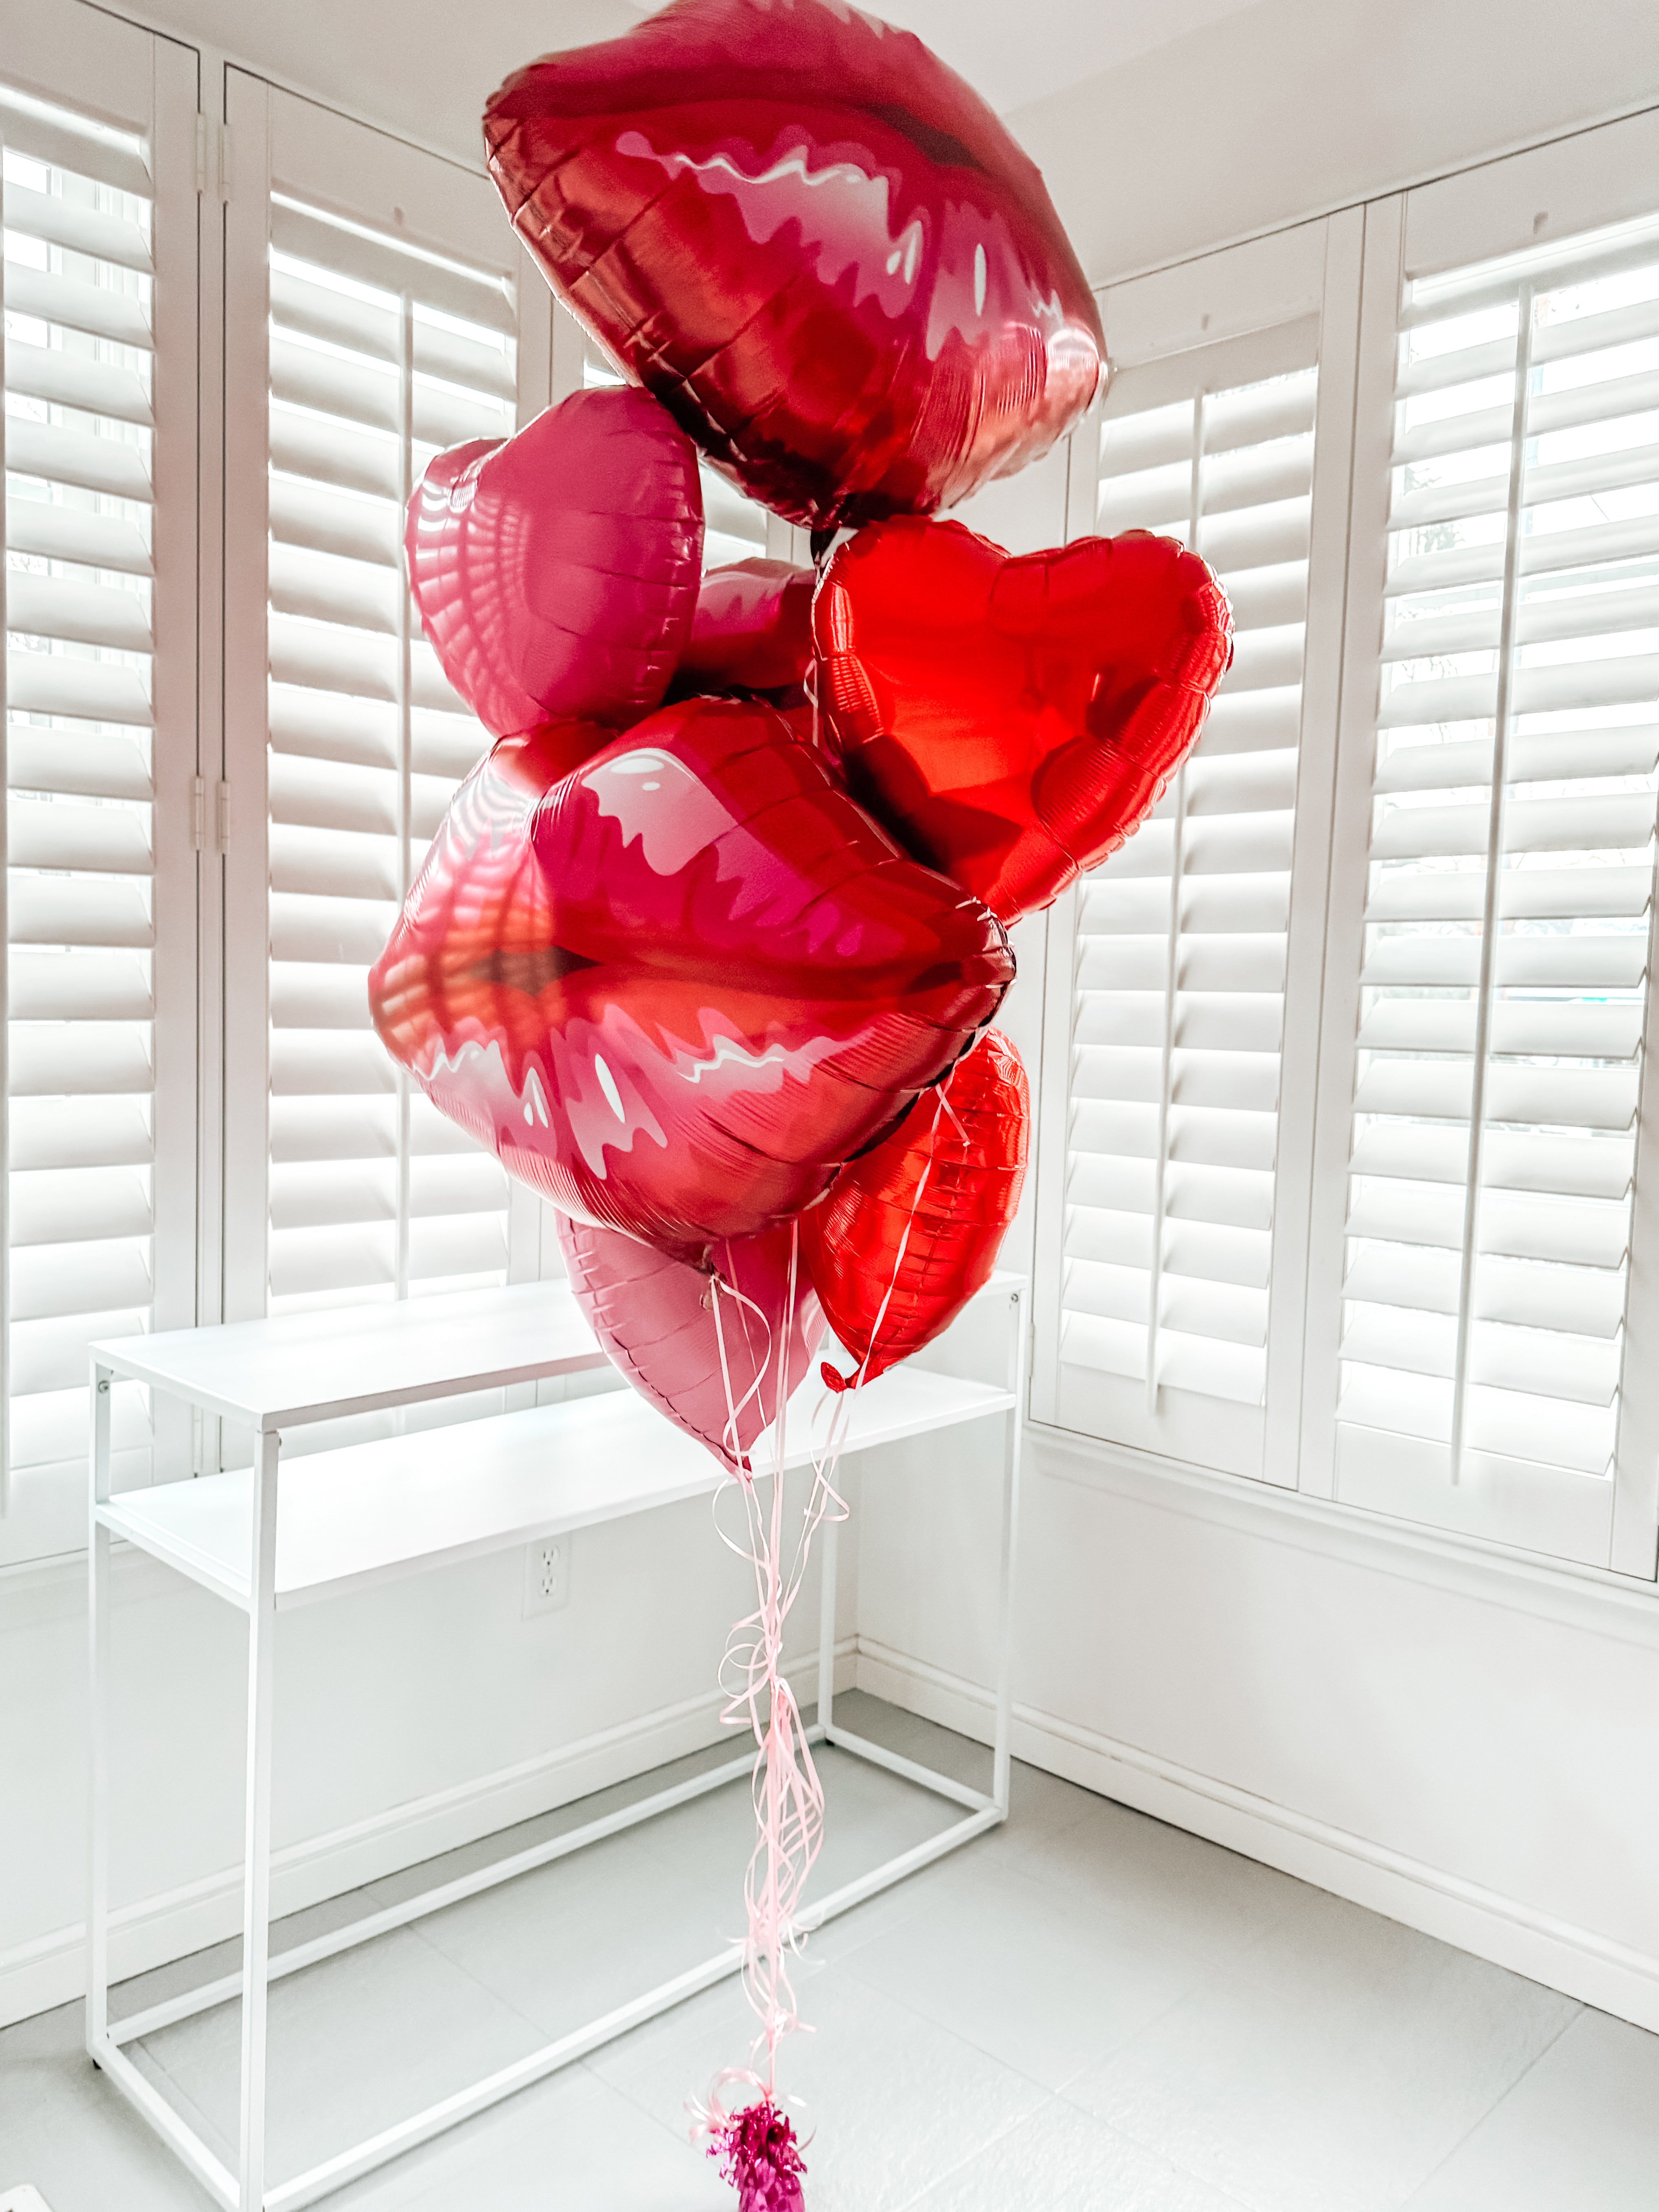 Smooch Lip Treatment Valentine Balloon Bouquet